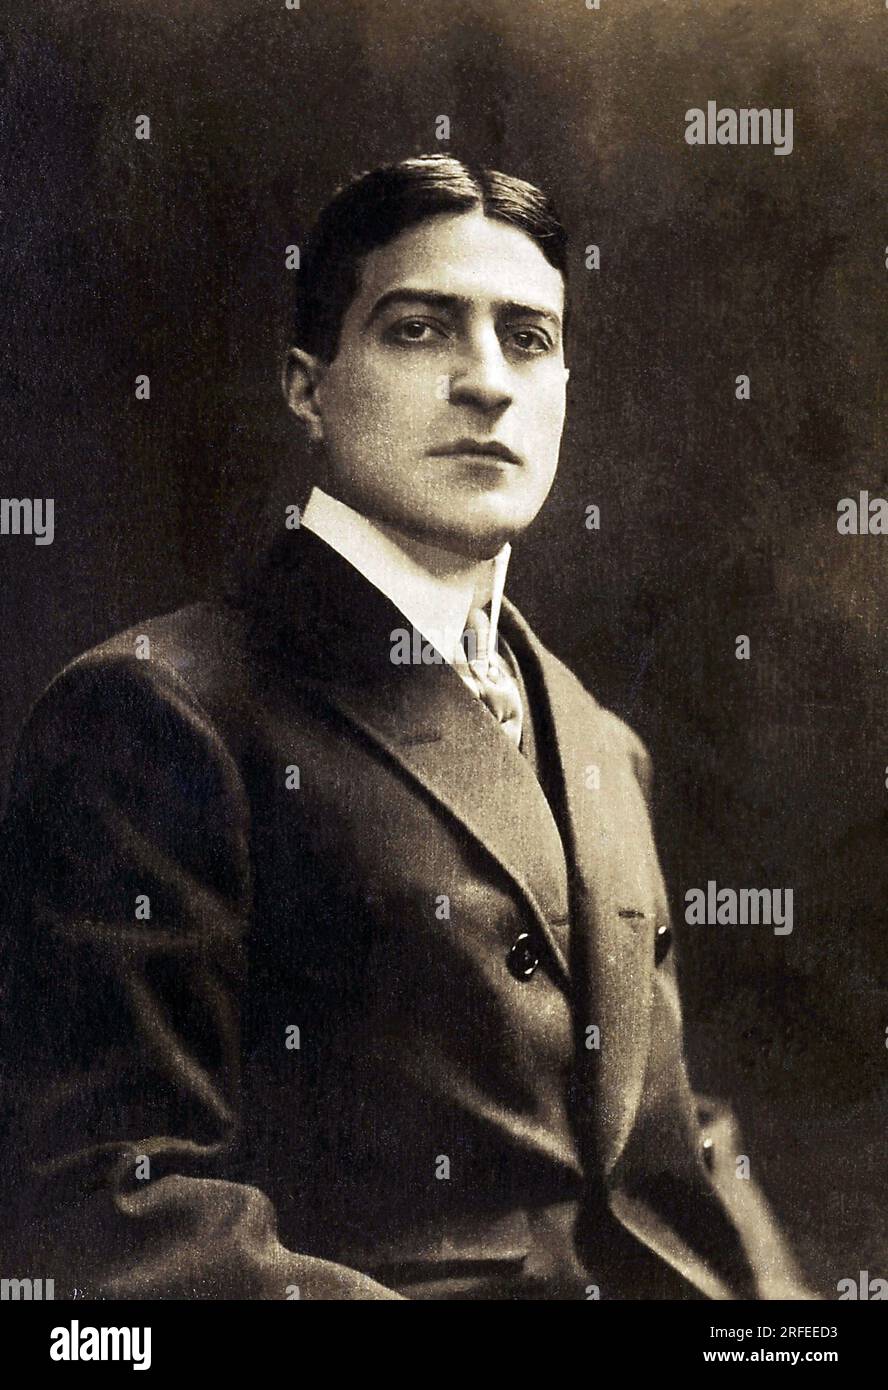 Portrait de Max Dearly (1874-1943), acteur de cinema francais. Photographie, debut du 20e siecle. Stock Photo